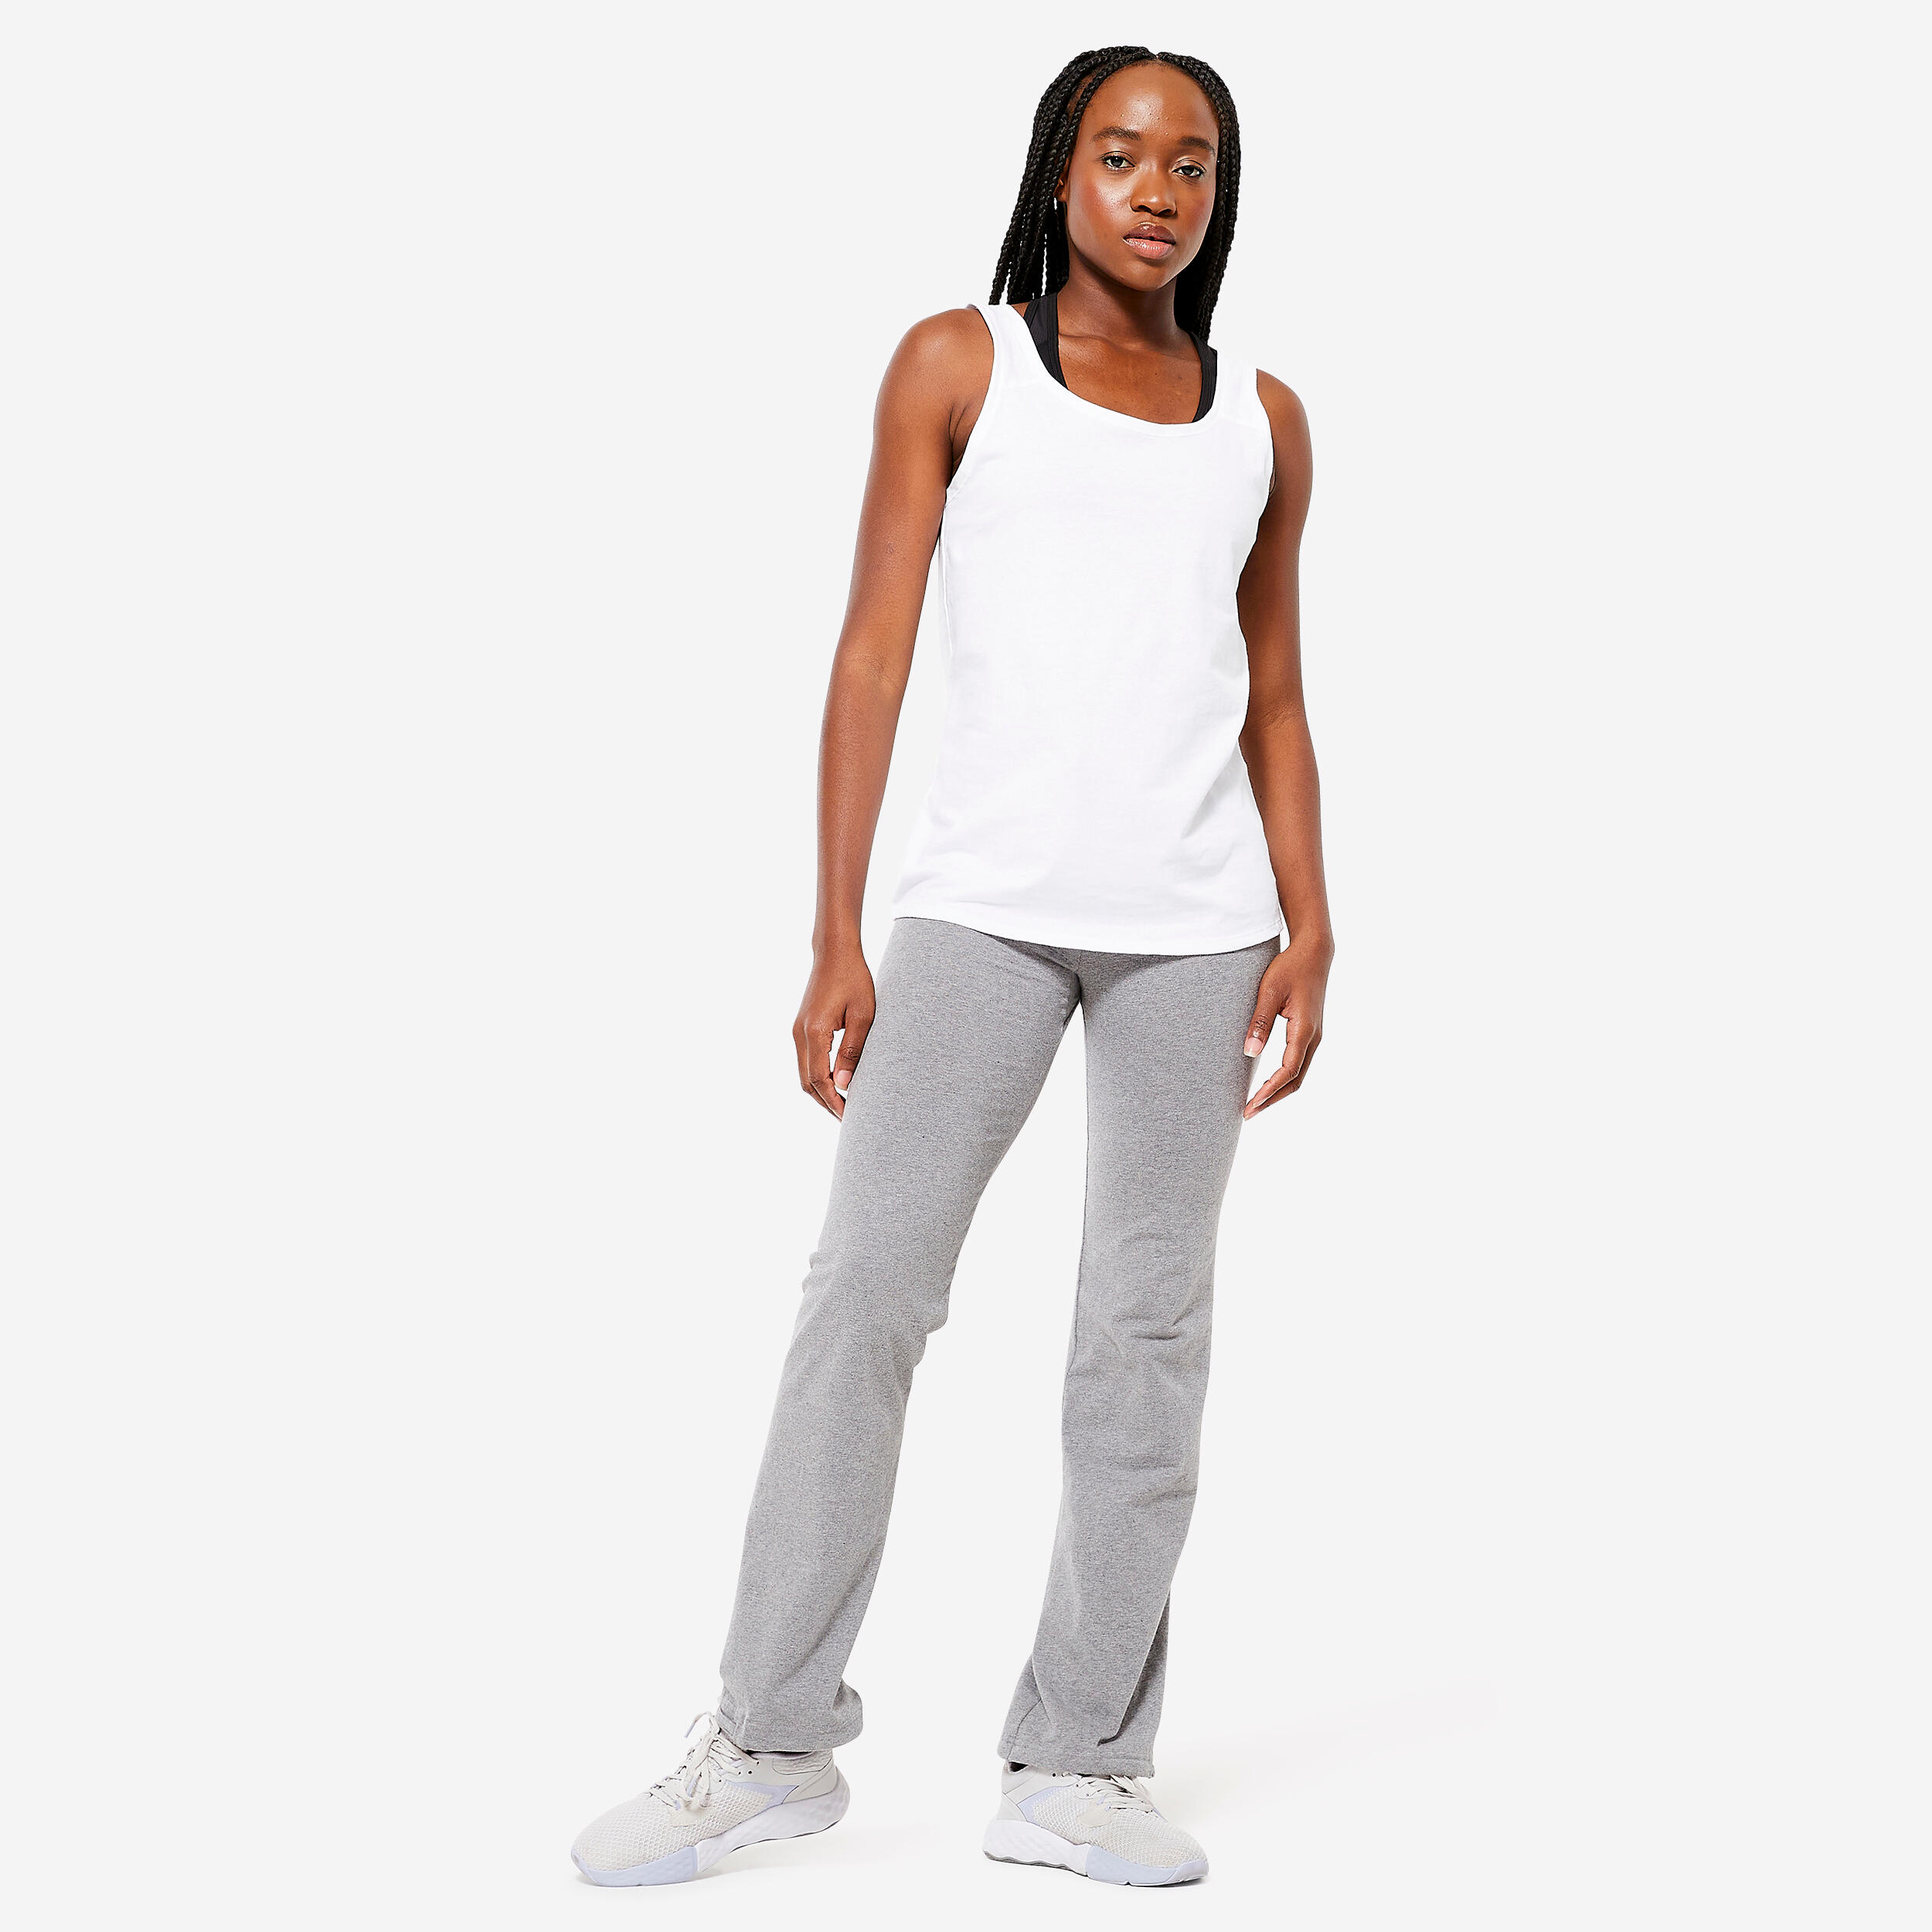 Women's Straight-Cut Adjustable Ankle Fitness Leggings 500 - Mottled Grey 2/7